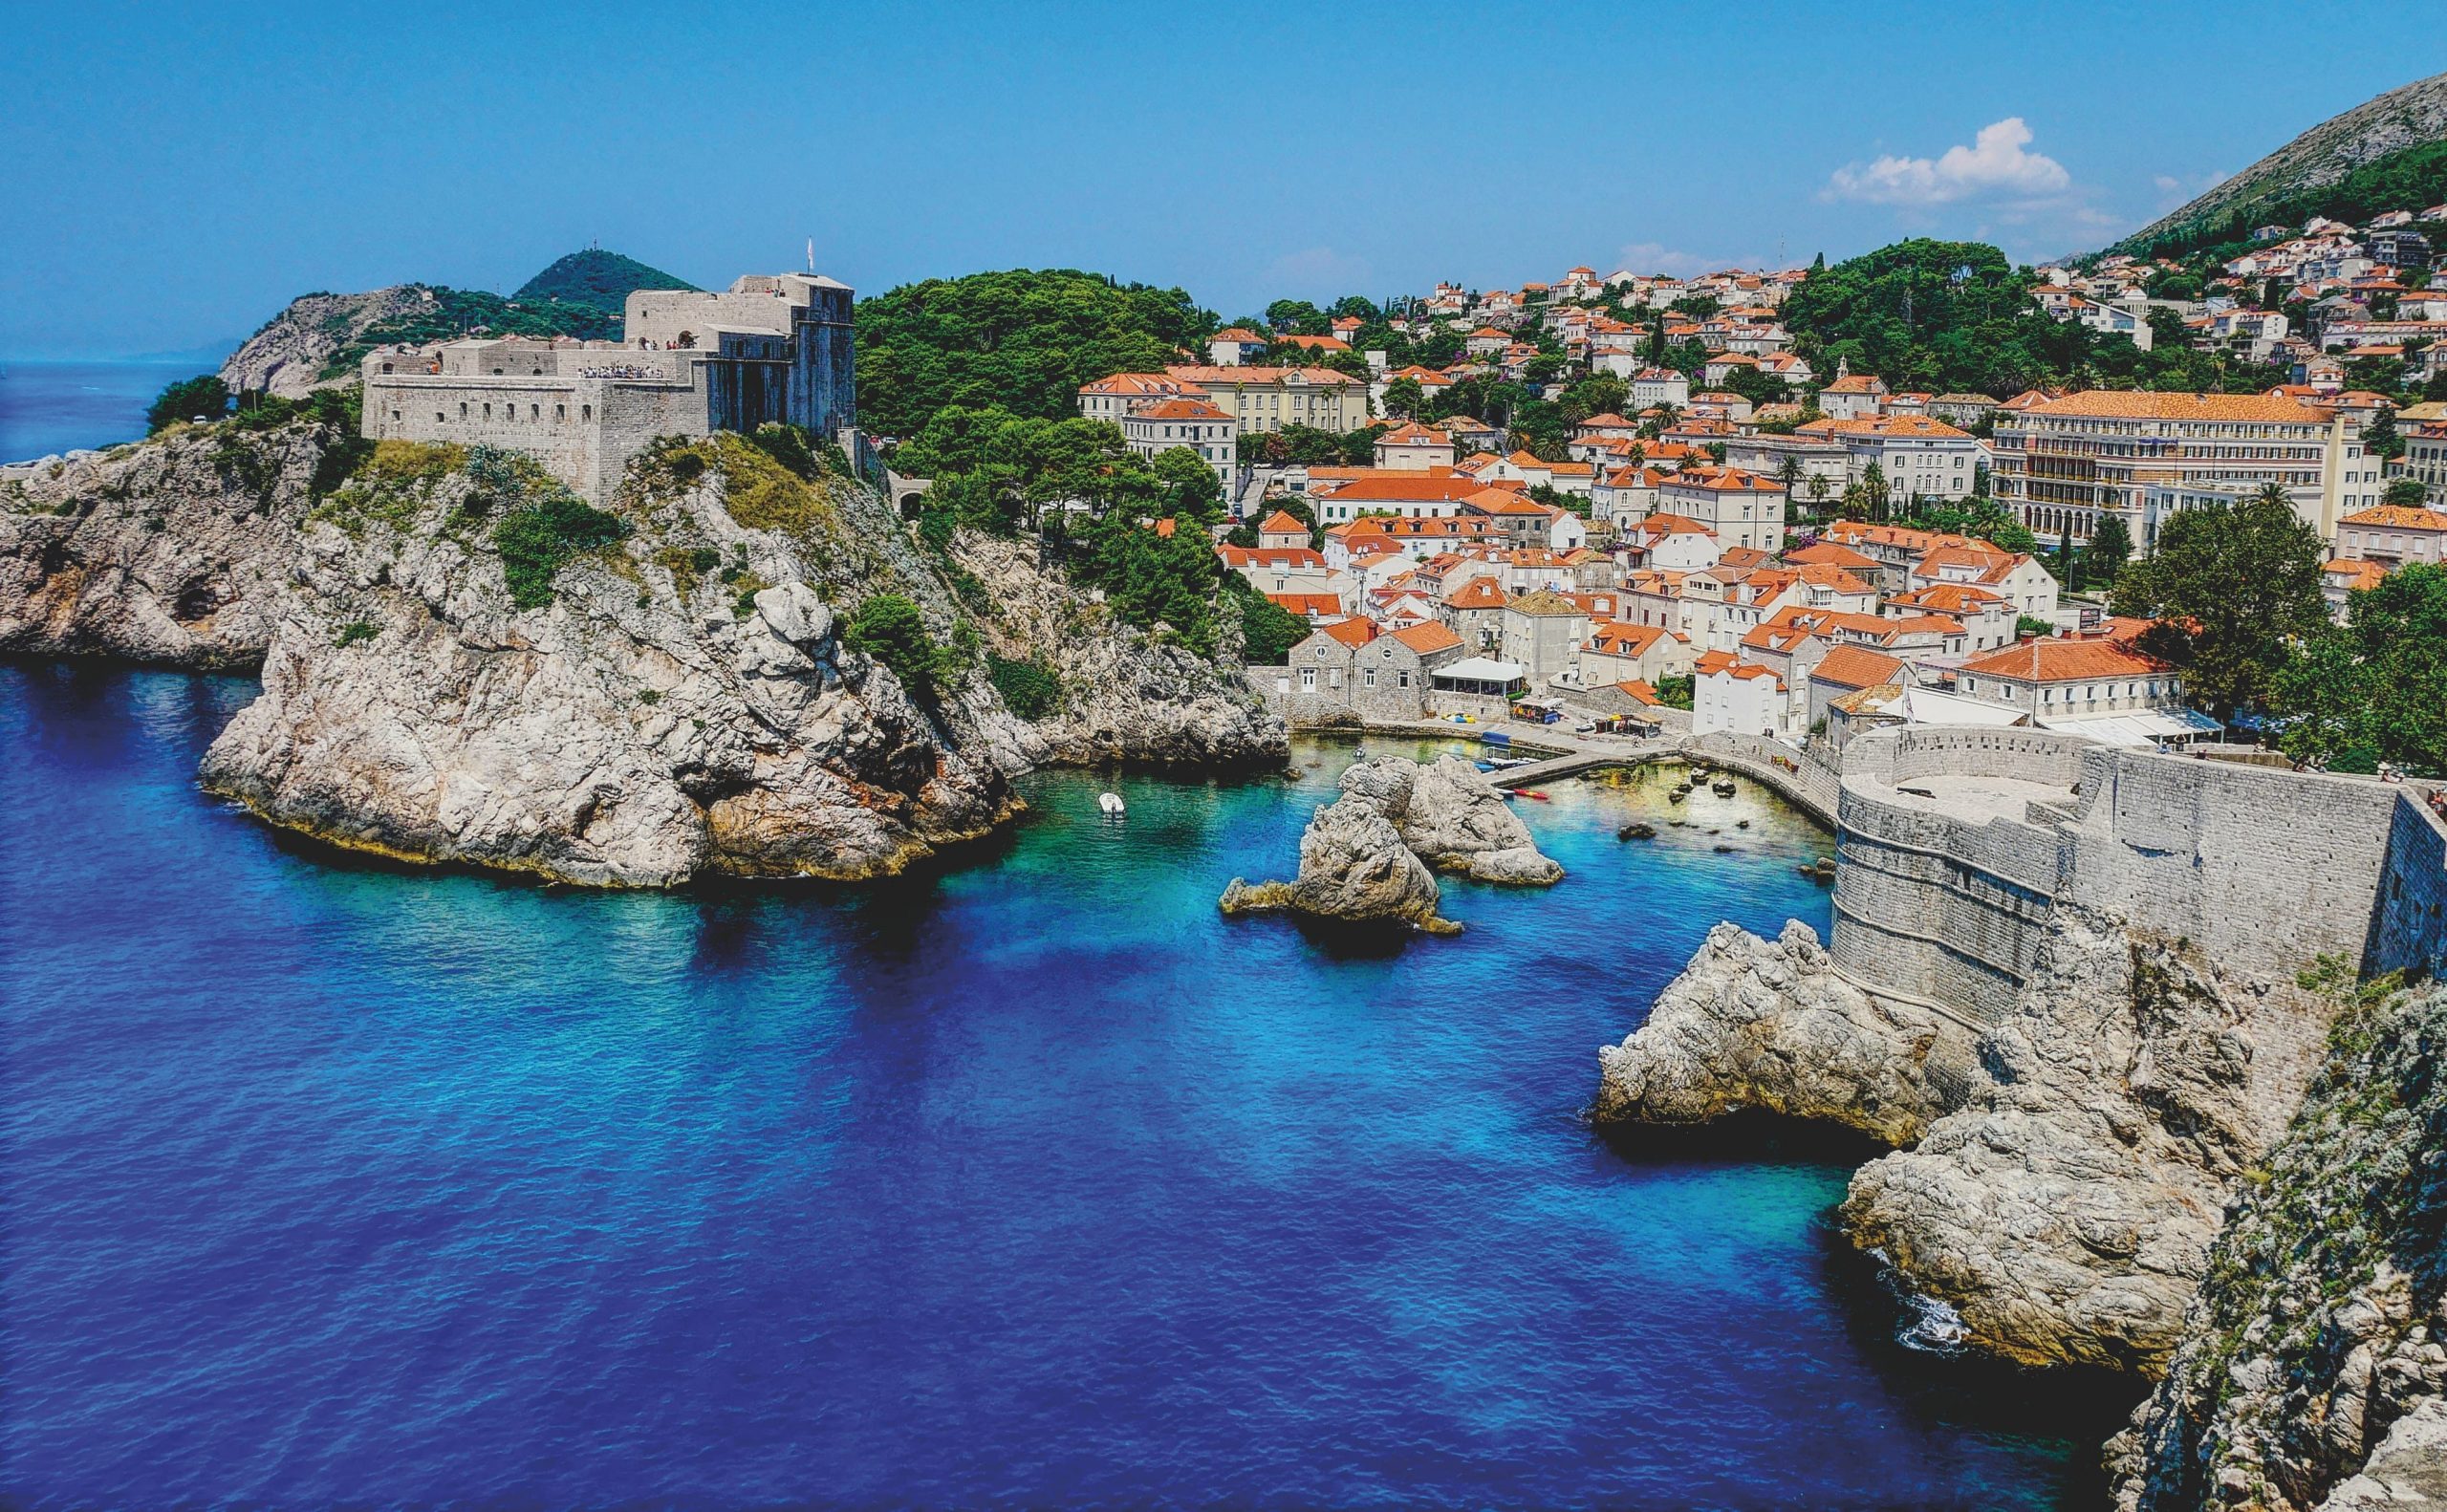 Croatia attracts tourists, thrives despite COVID-19